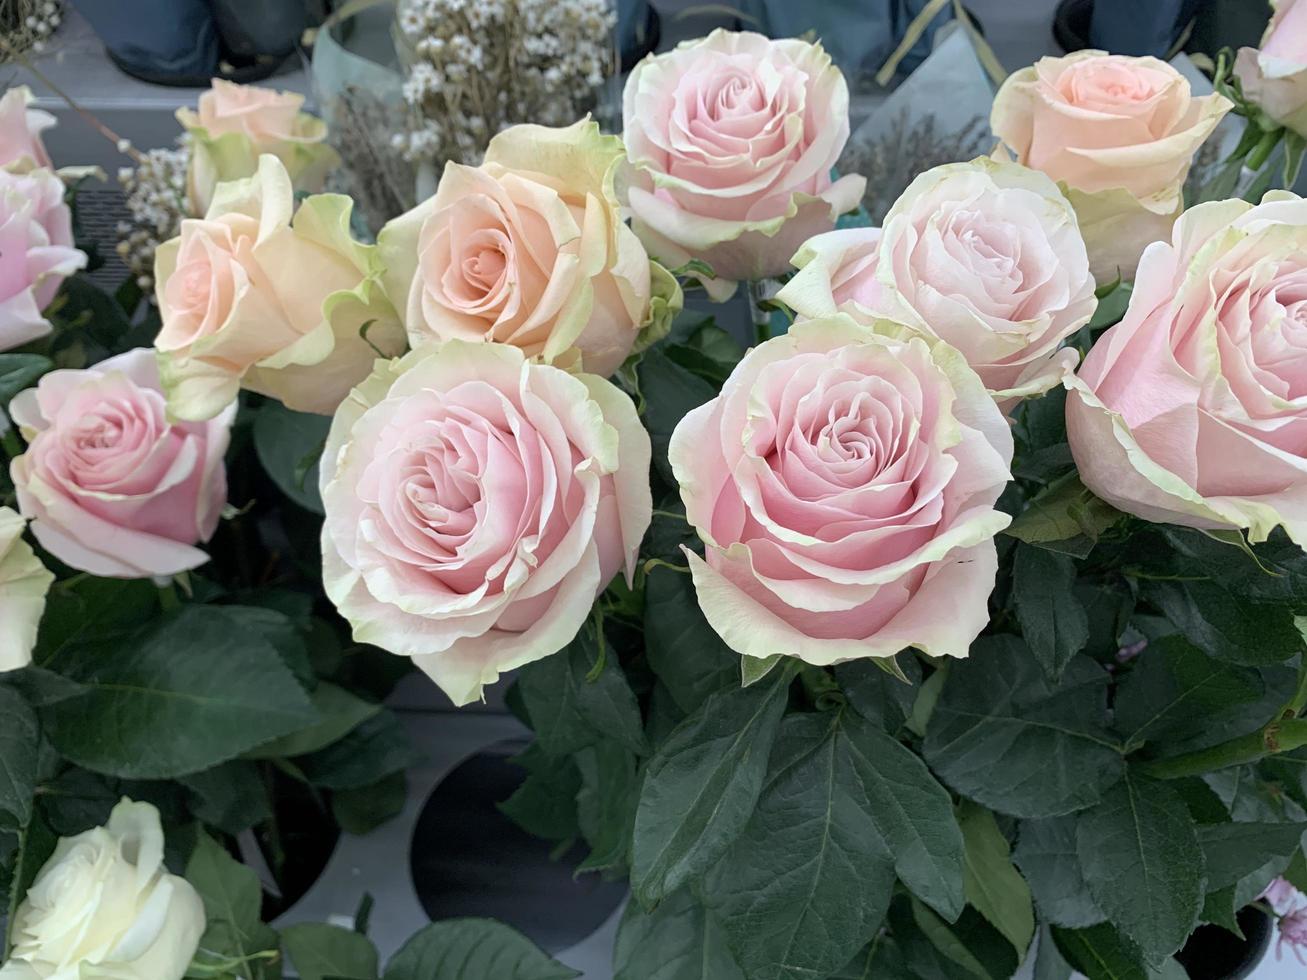 couper des roses fraîches de couleurs pastel, vente. studio photo